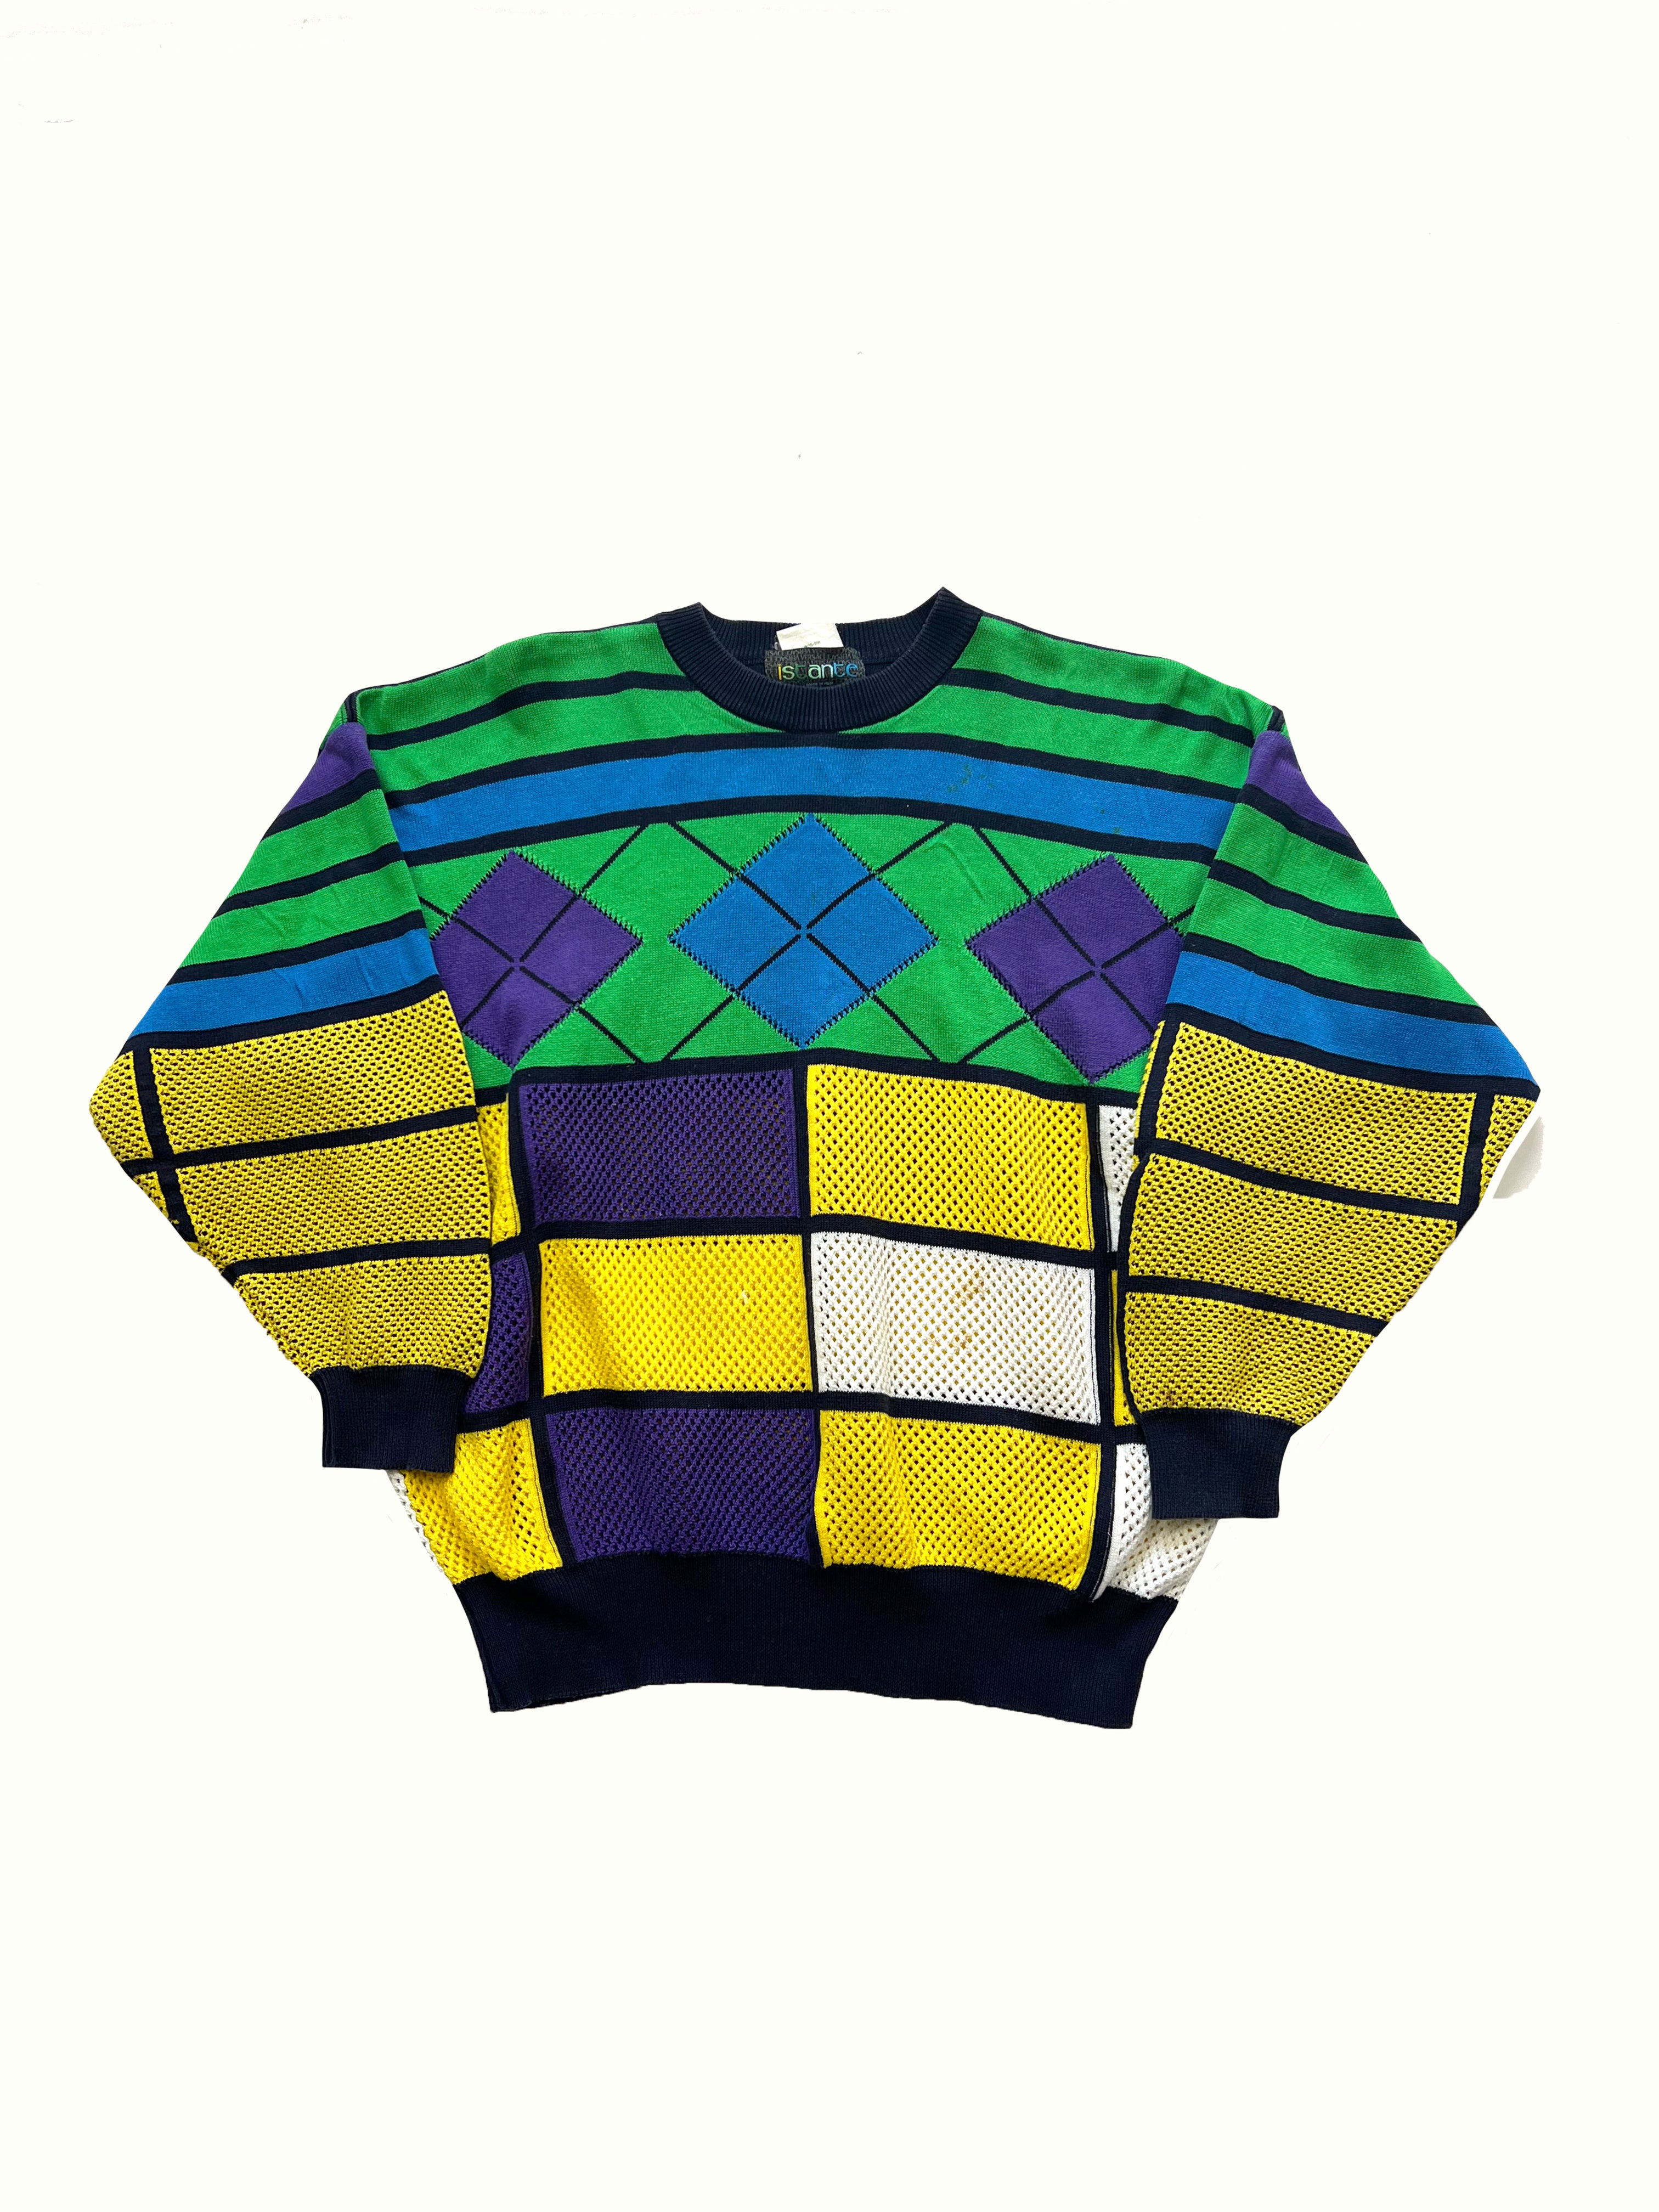 Instante Versace Wool Multi Knit 1992